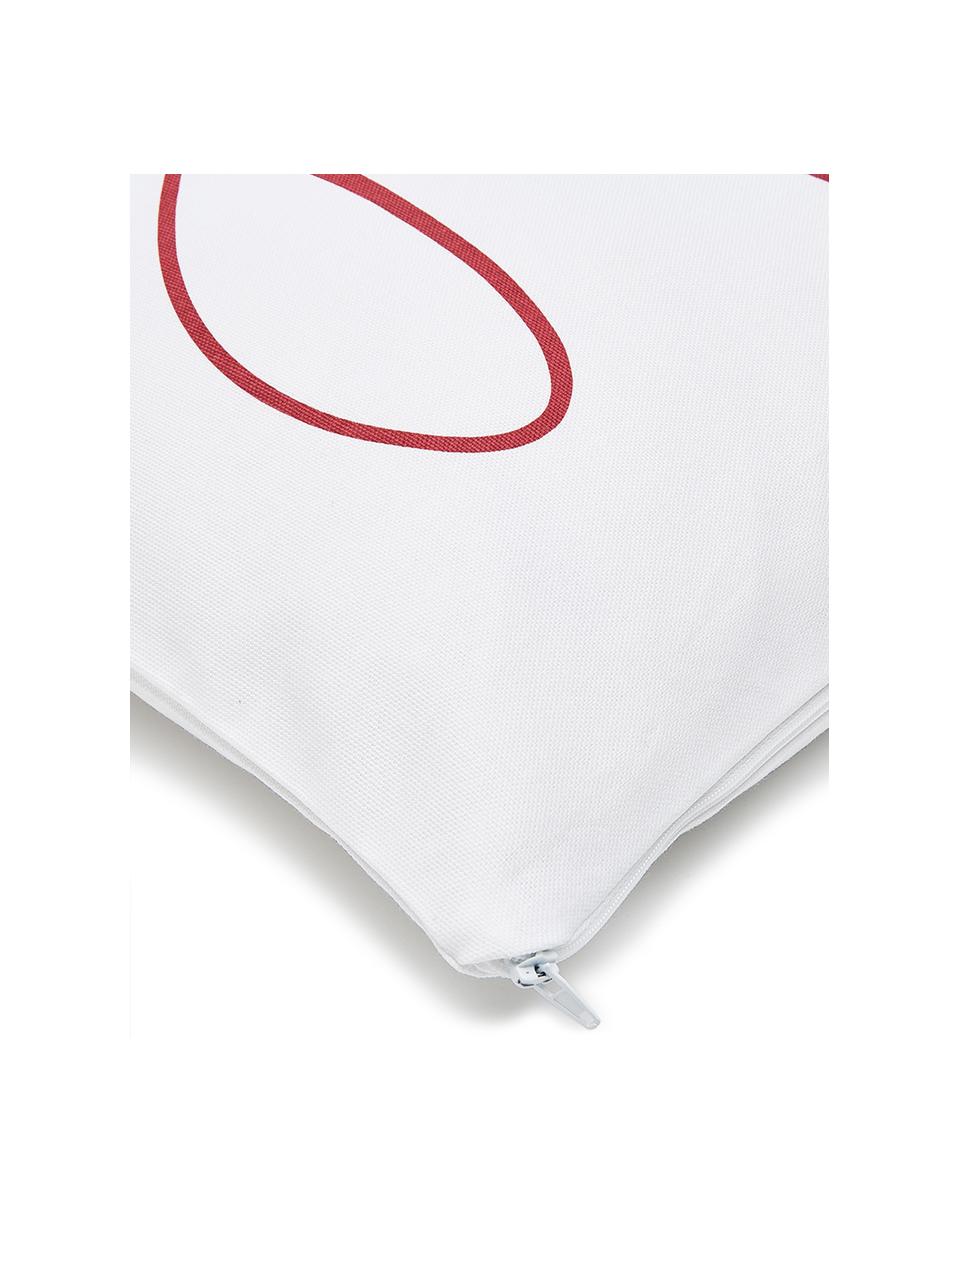 Povlak na polštář s nápisem Joy, Bílá, červená